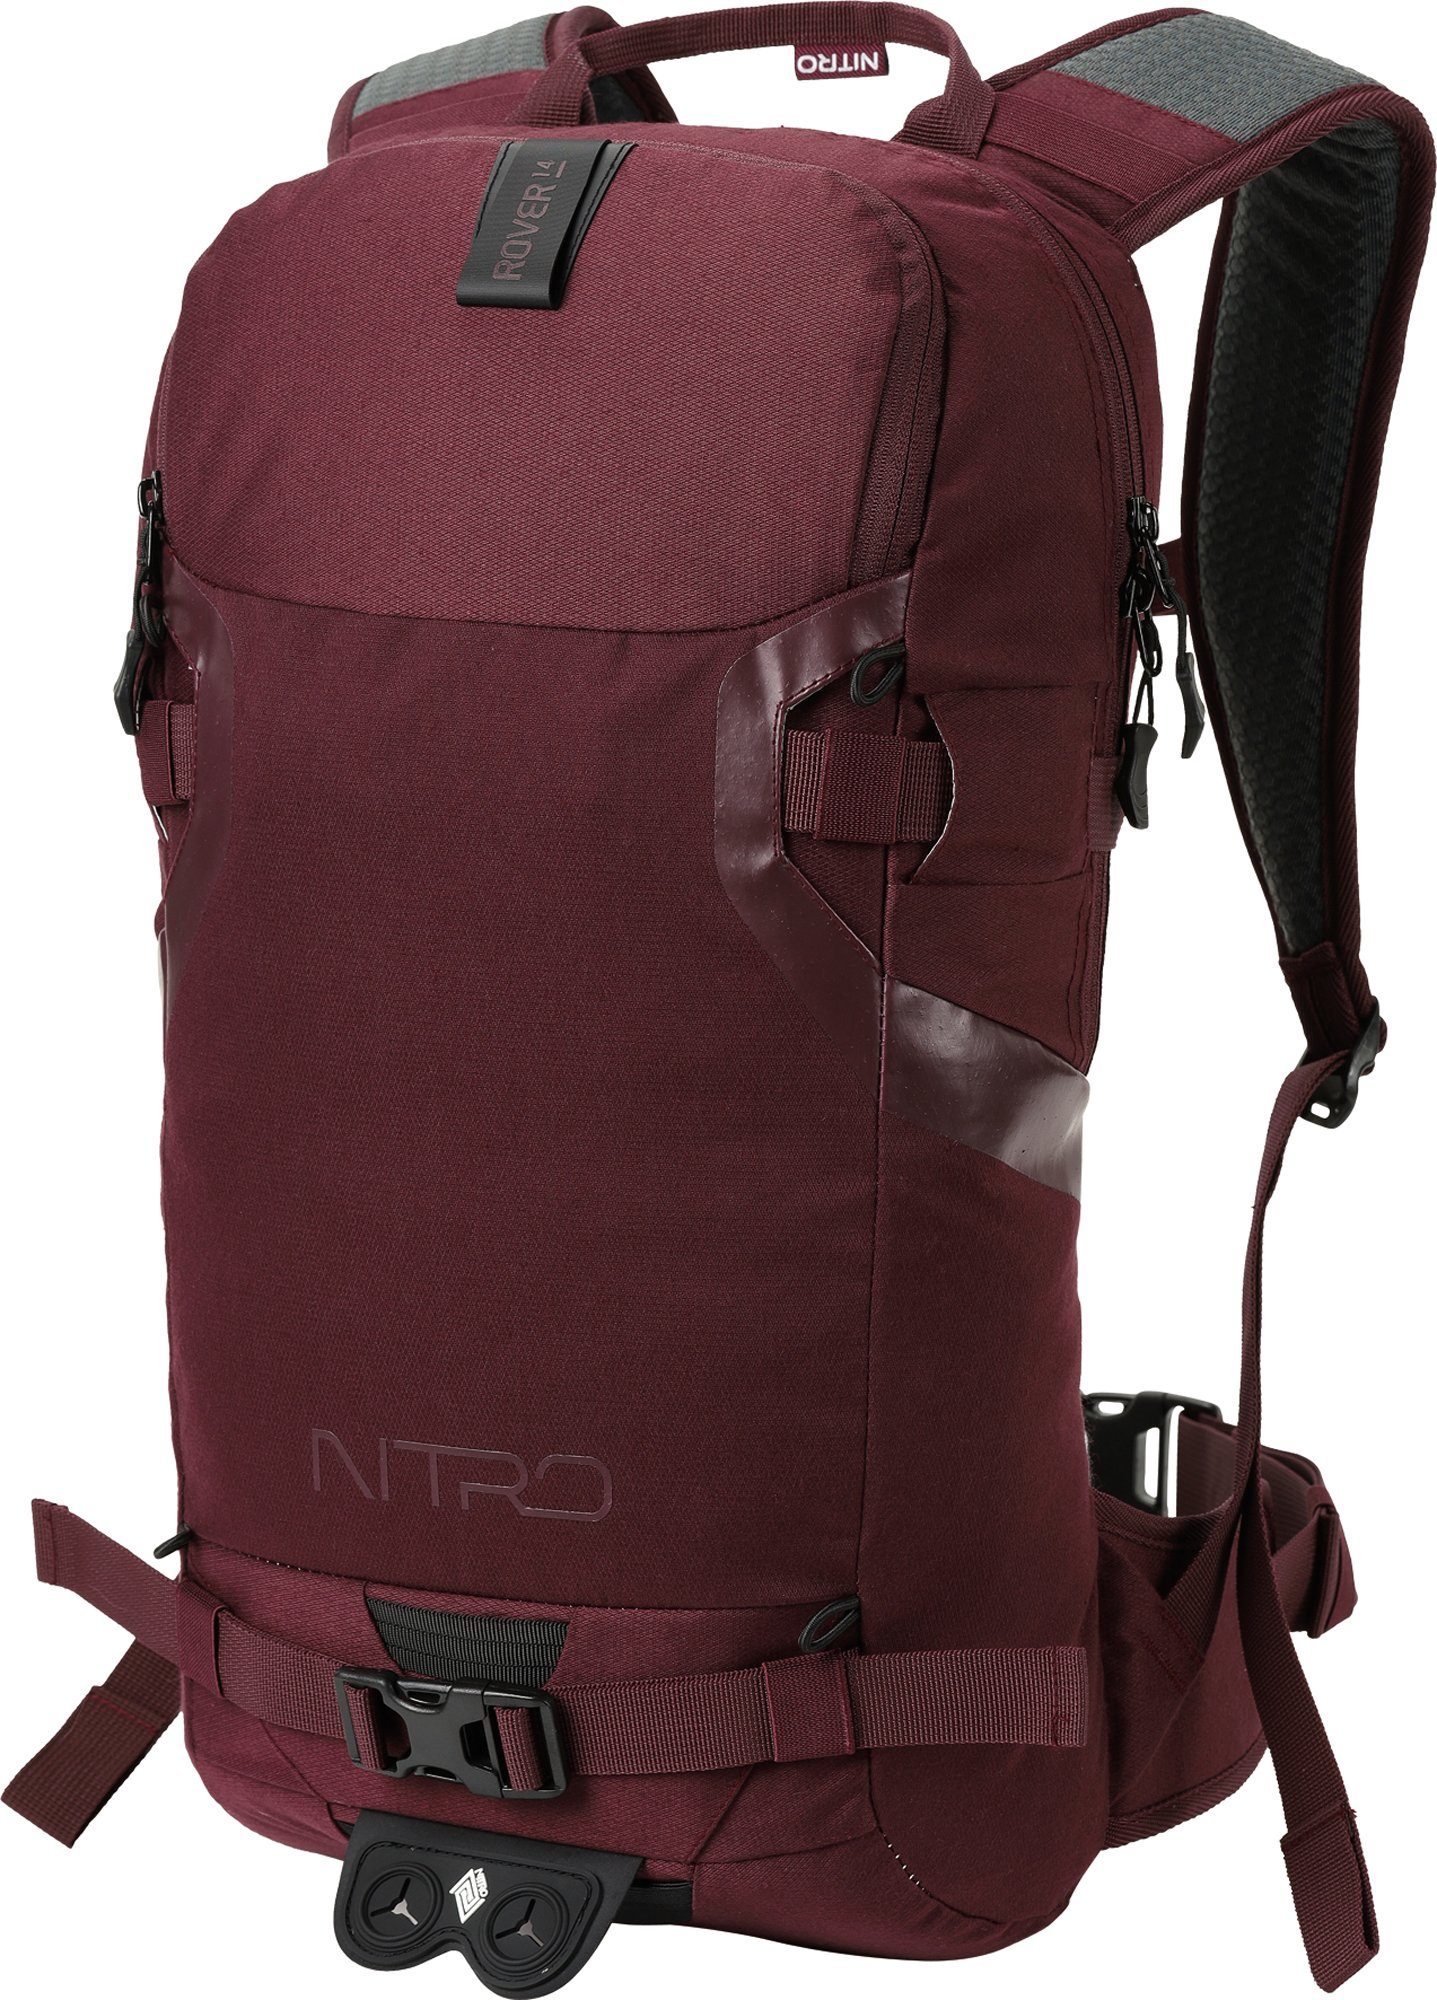 NITRO Trekkingrucksack Rover 14, Wine, speziell für den Wintersport konzipiert